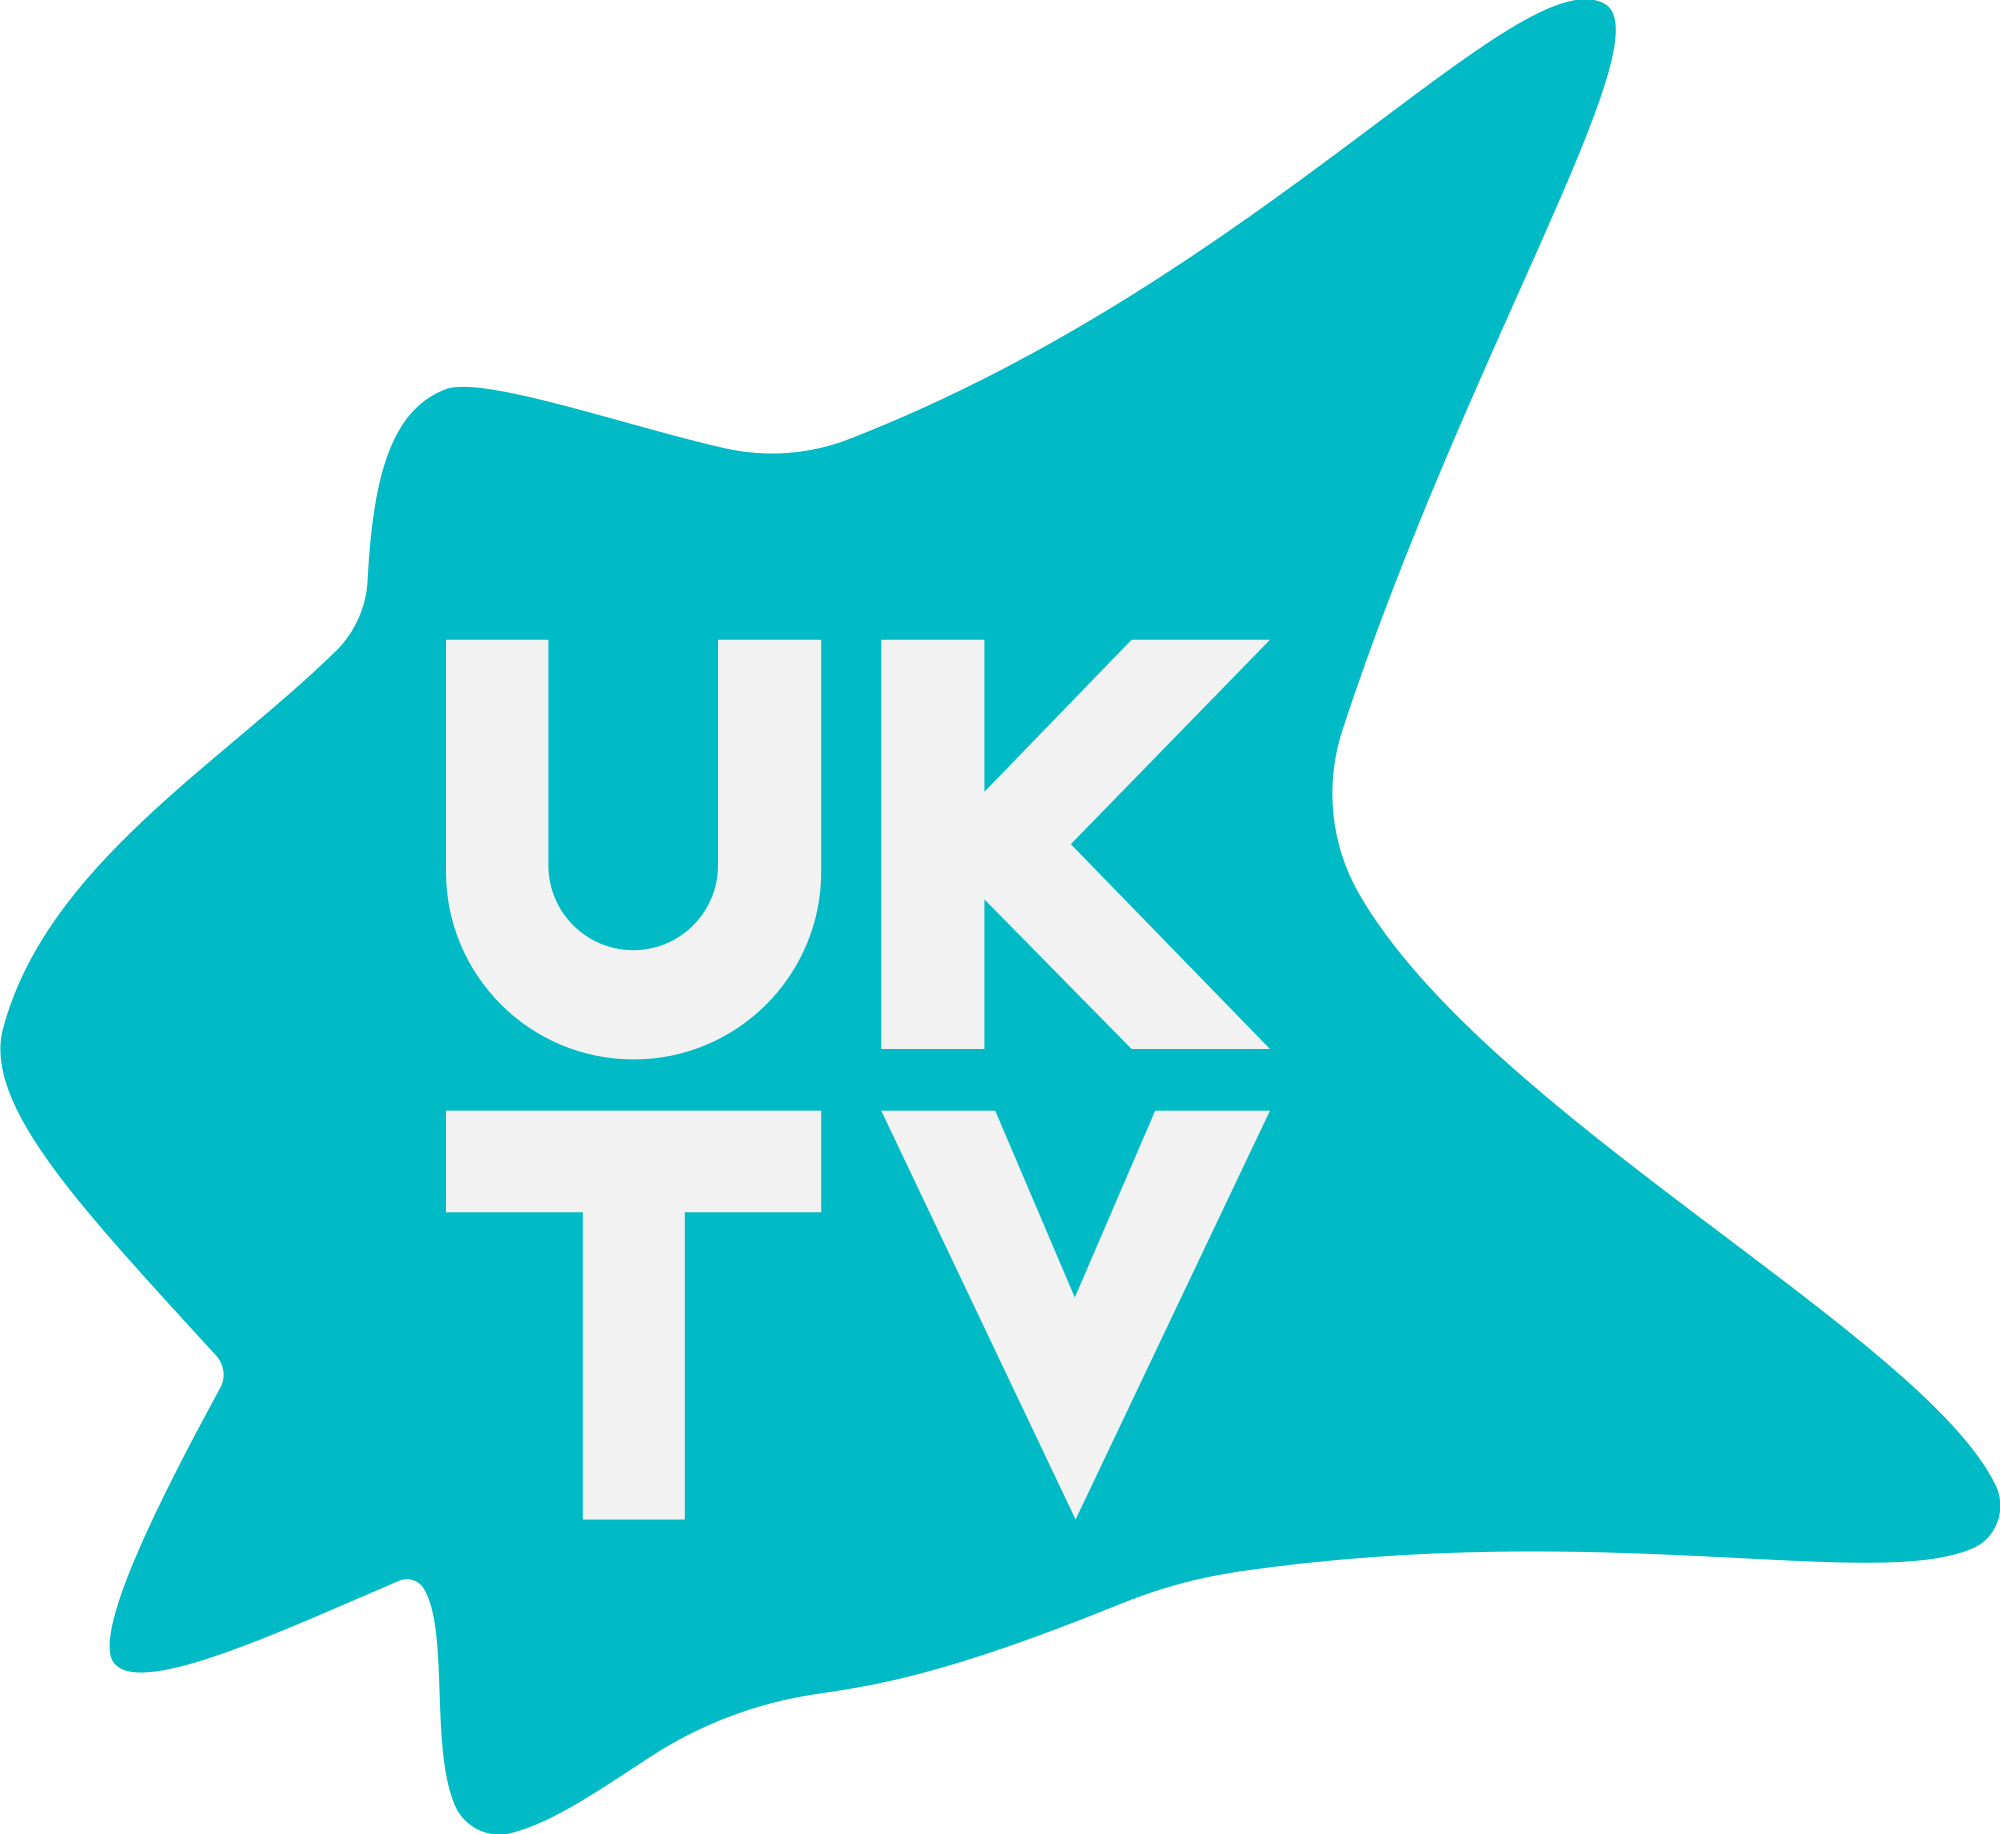 UKTV - company